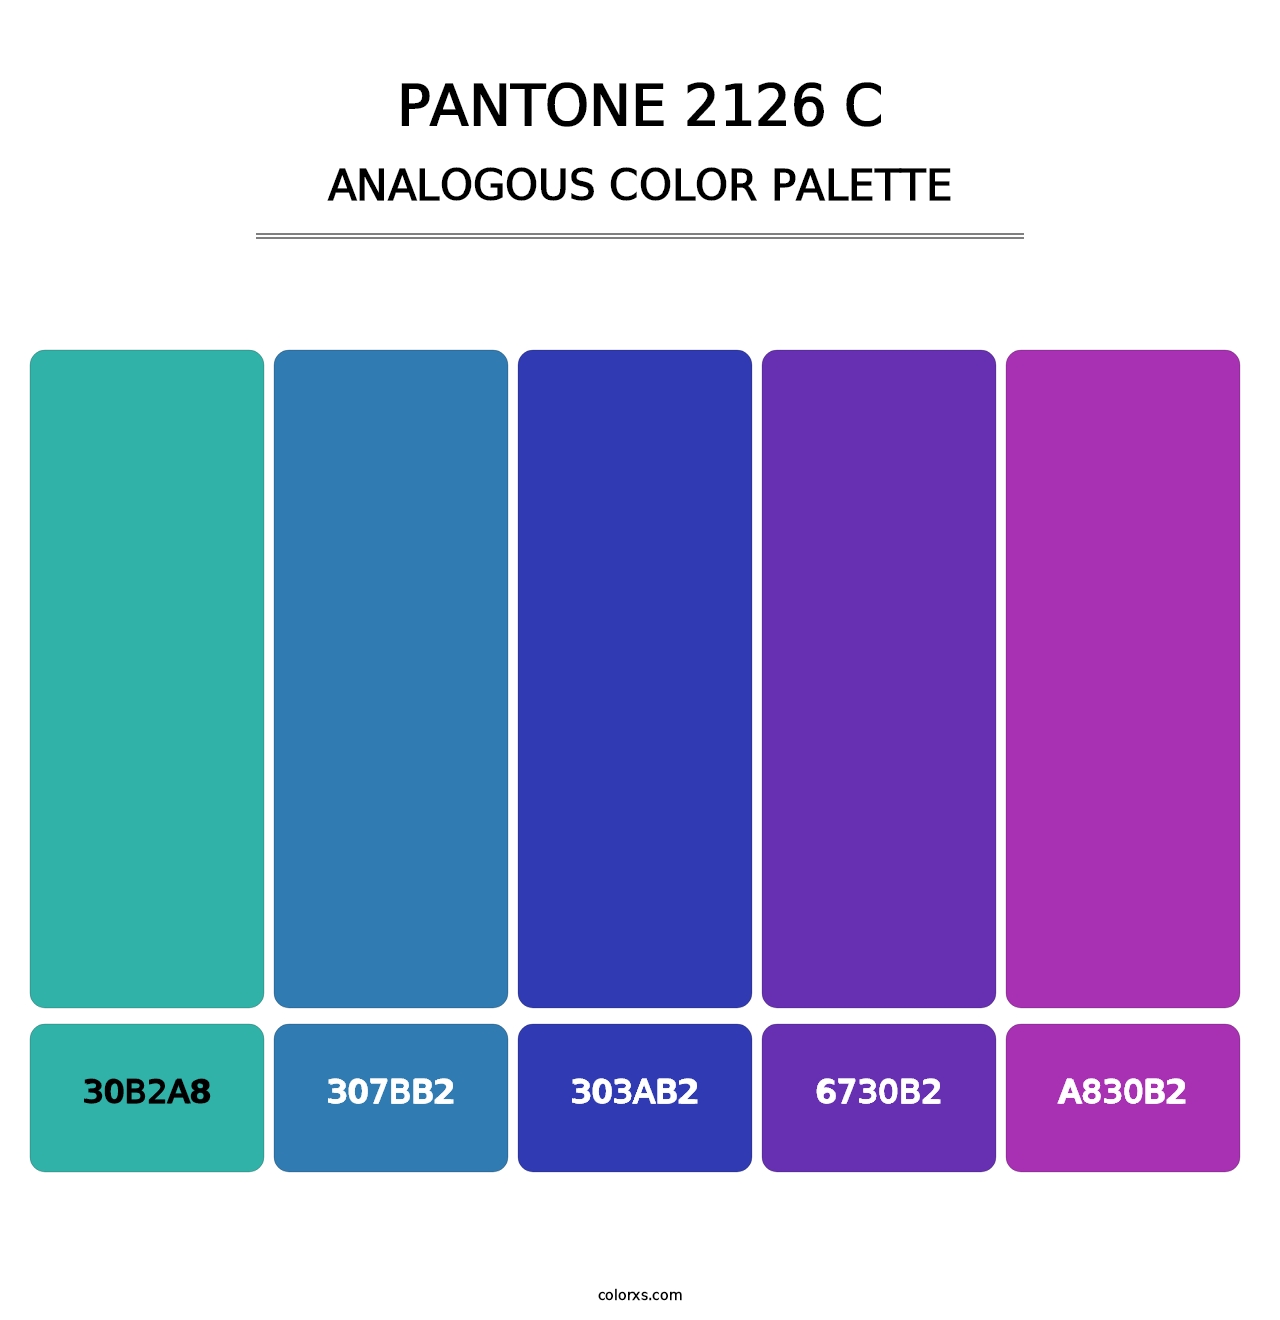 PANTONE 2126 C - Analogous Color Palette